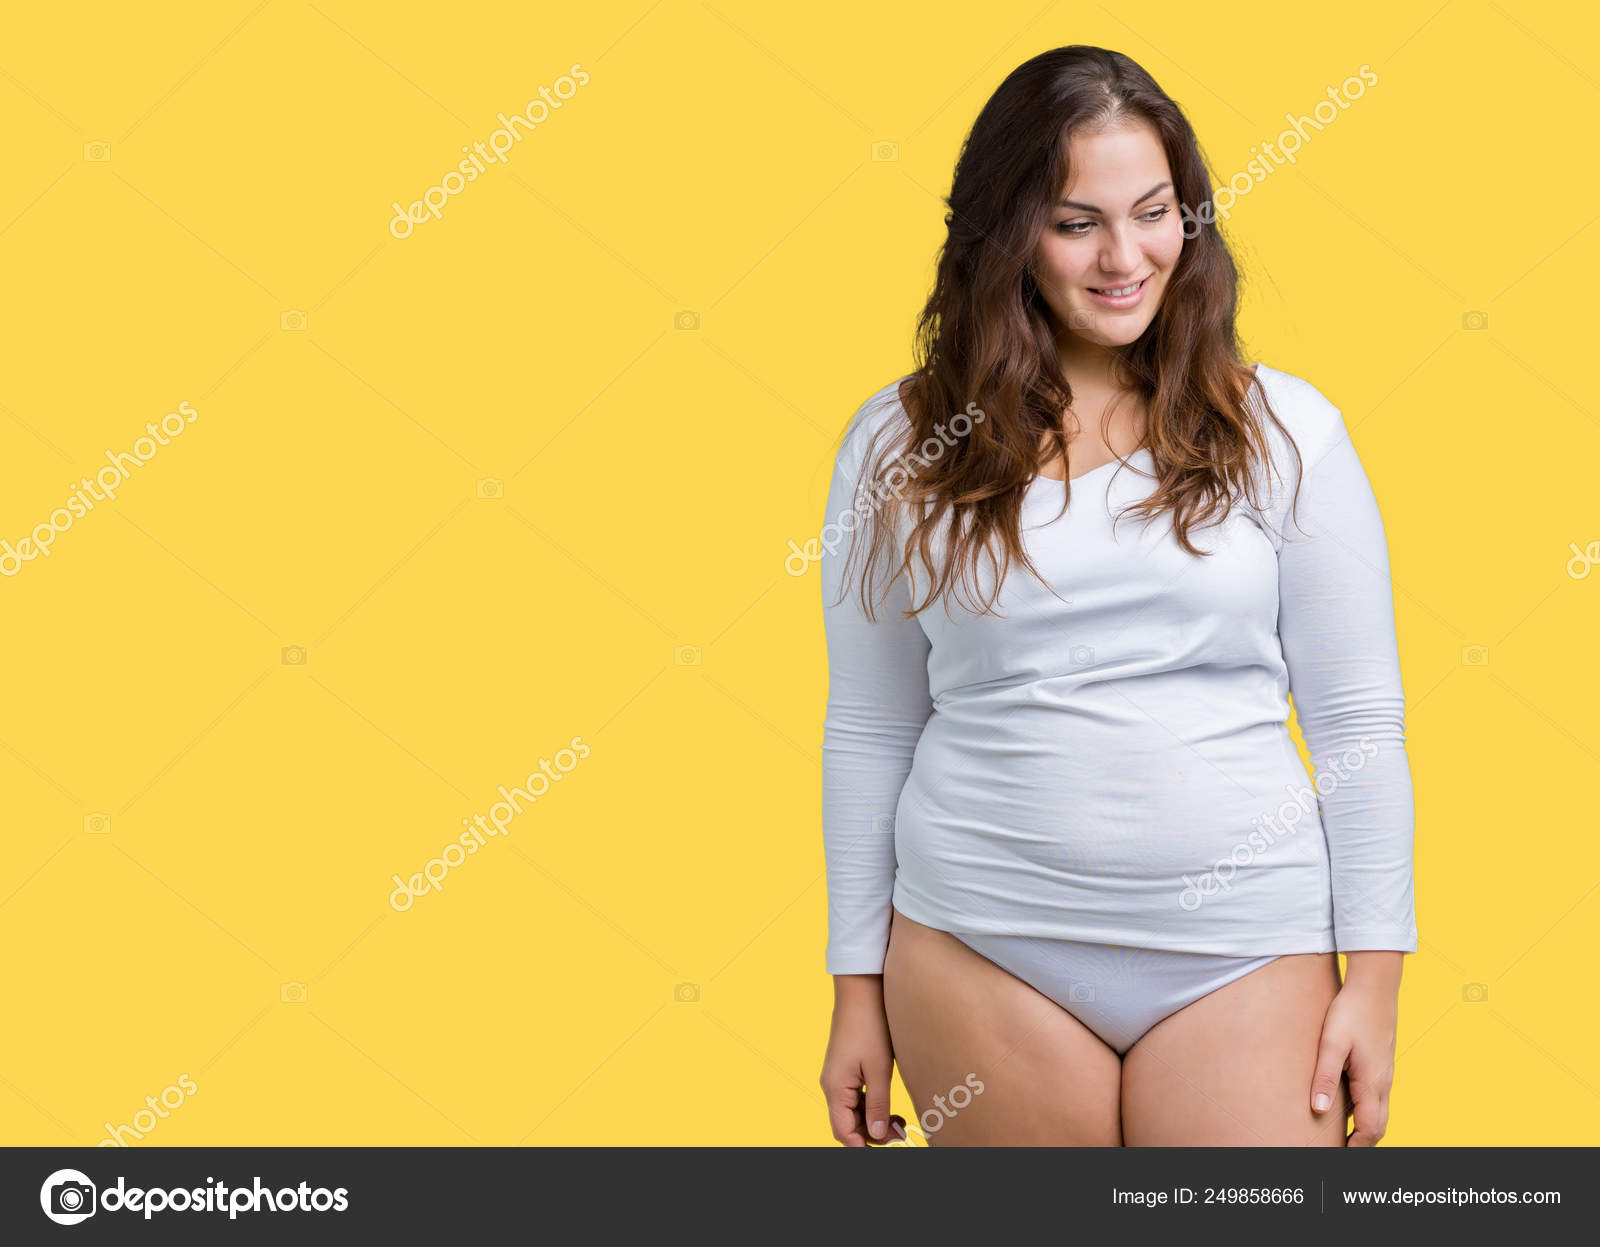 Women overweight beautiful As an